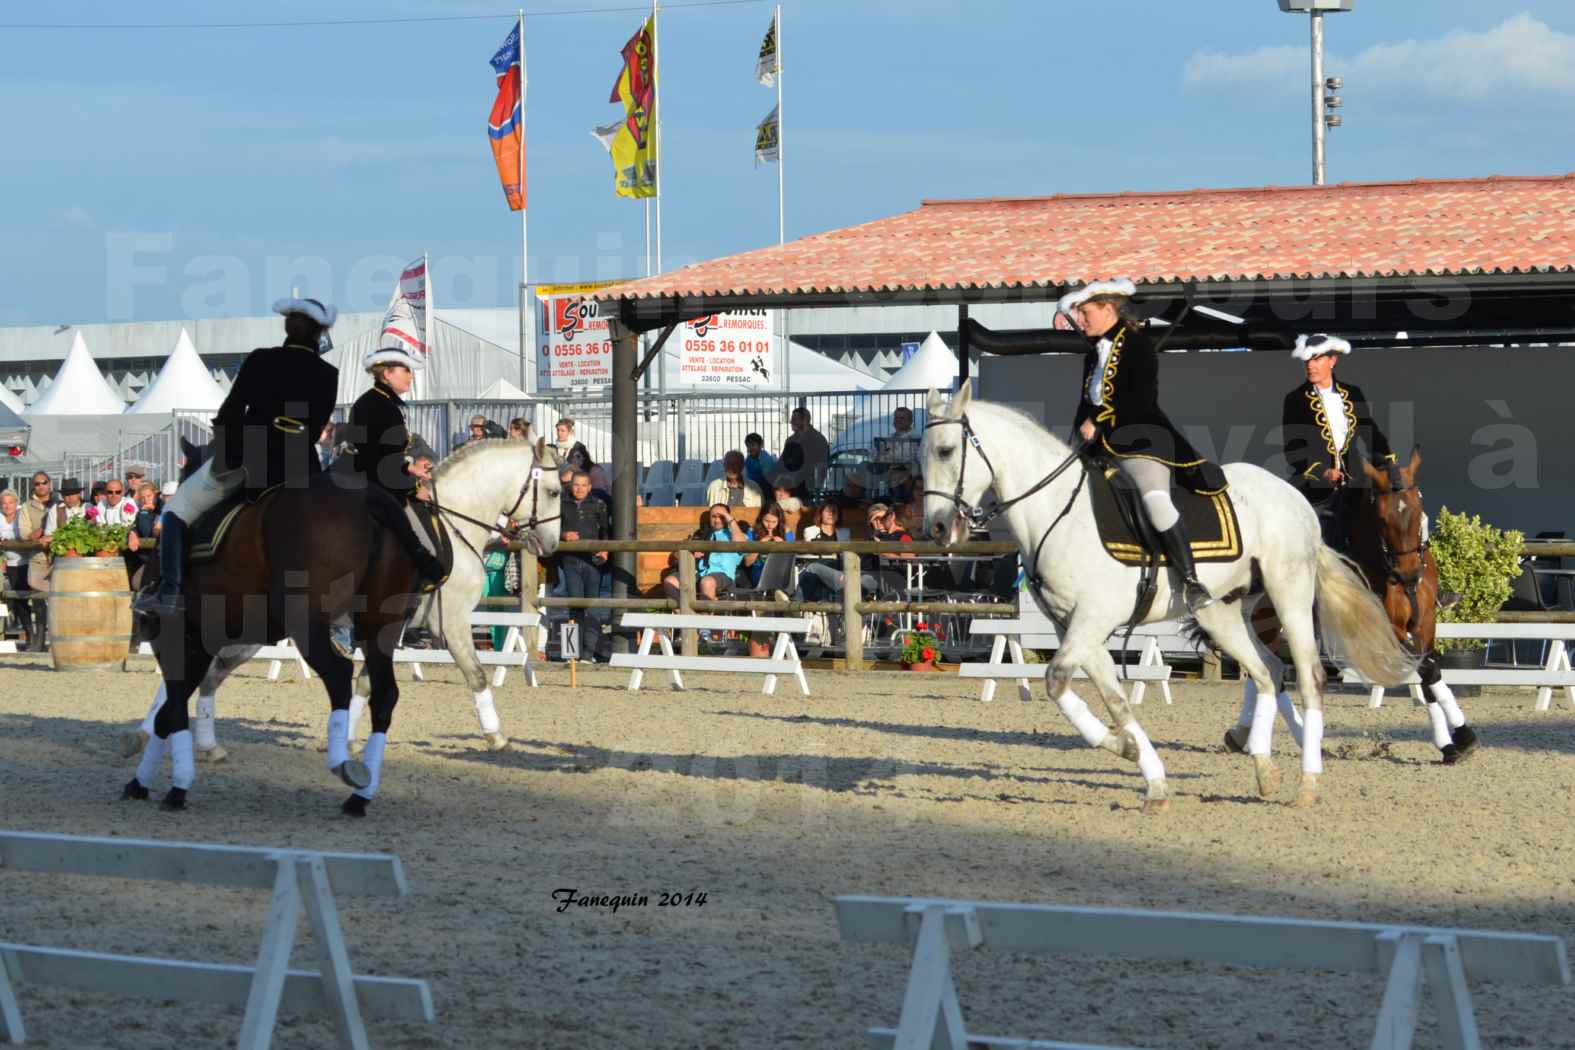 Carrousel de cavalières Equitation de travail lors du salon "Equitaine" à Bordeaux en 2014 - 52